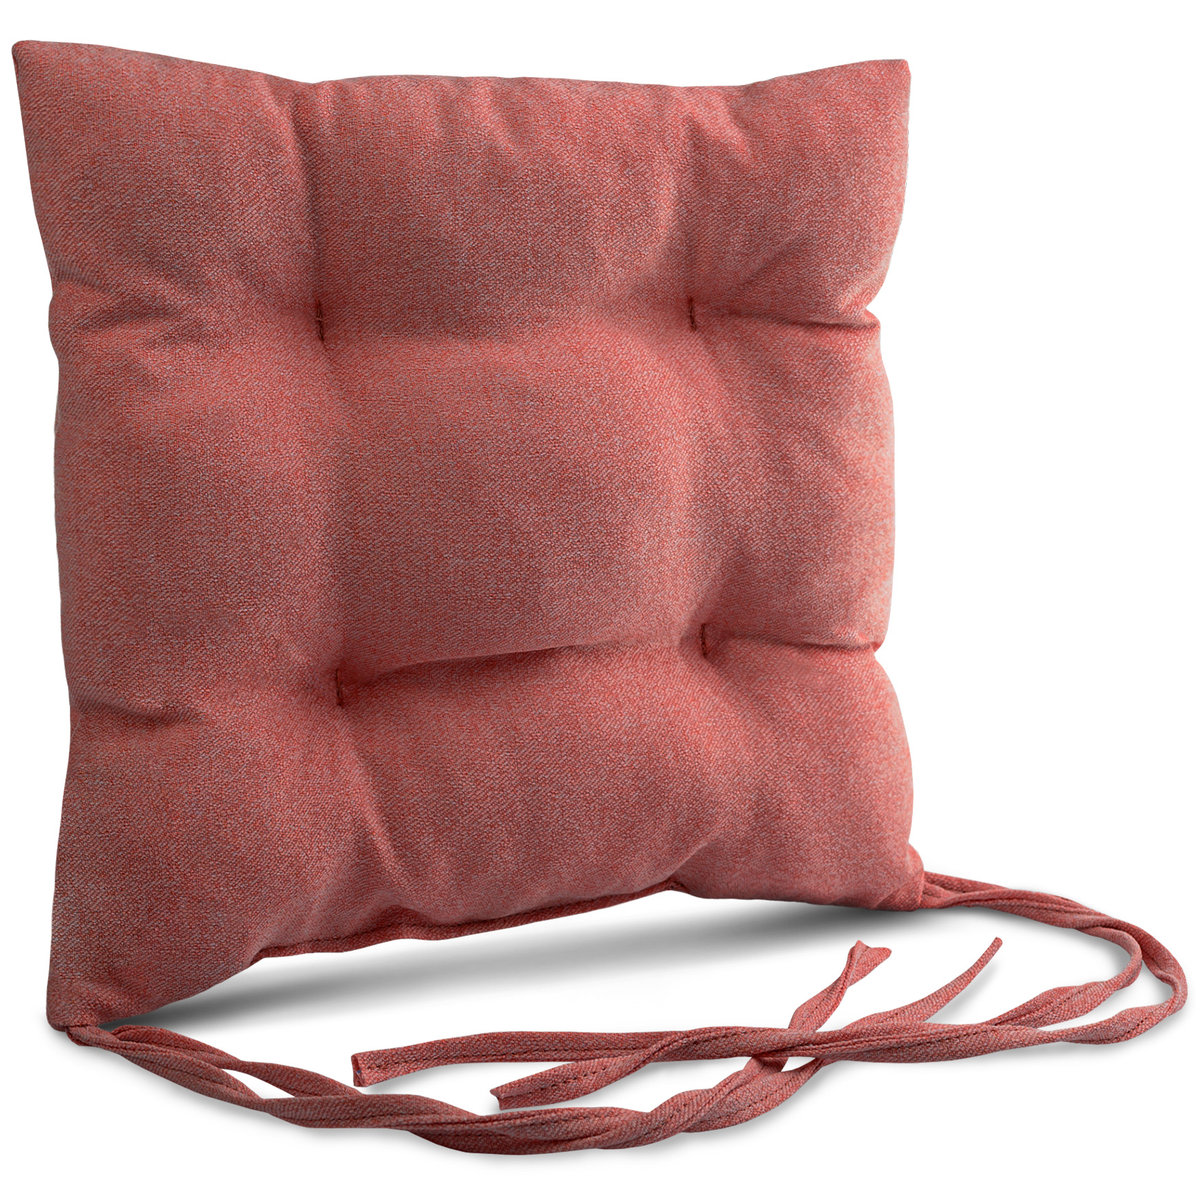 Poduszka ogrodowa na krzesło 40x40 cm w kolorze różowym ze sznureczkami do przywiązania